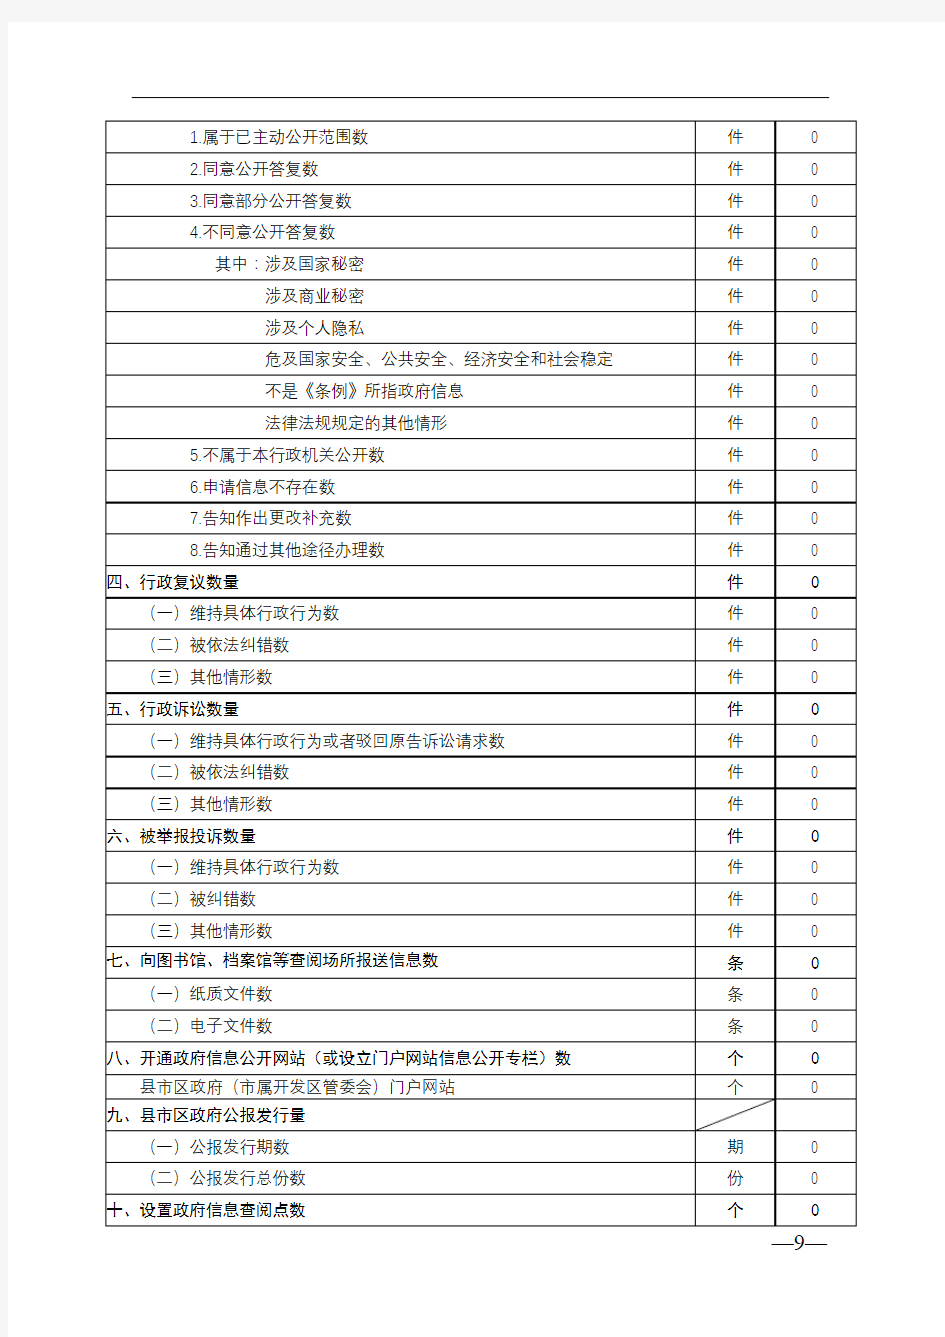 2018年度政府信息公开工作情况统计表(诸城南湖生态经济发展区管理委员会)【模板】